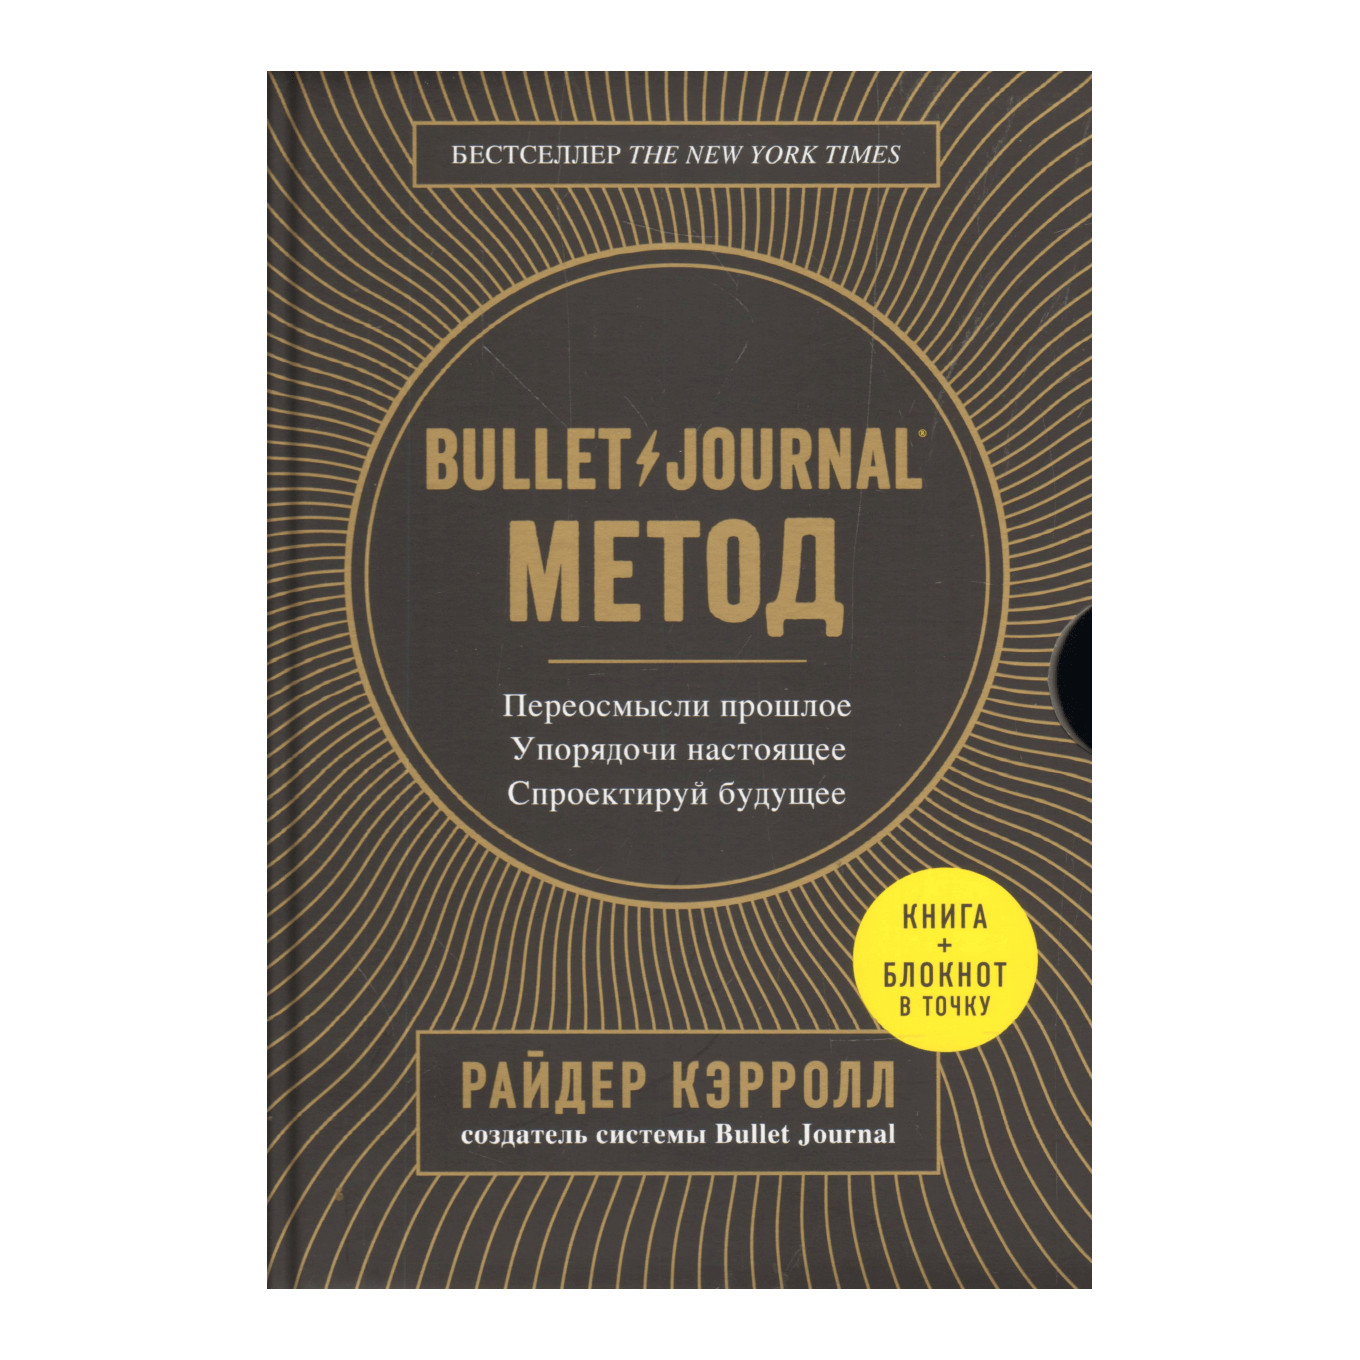 Книга Райдера Кэрролла «Bullet Journal метод. Переосмысли прошлое, упорядочи настоящее, спроектируй будущее»